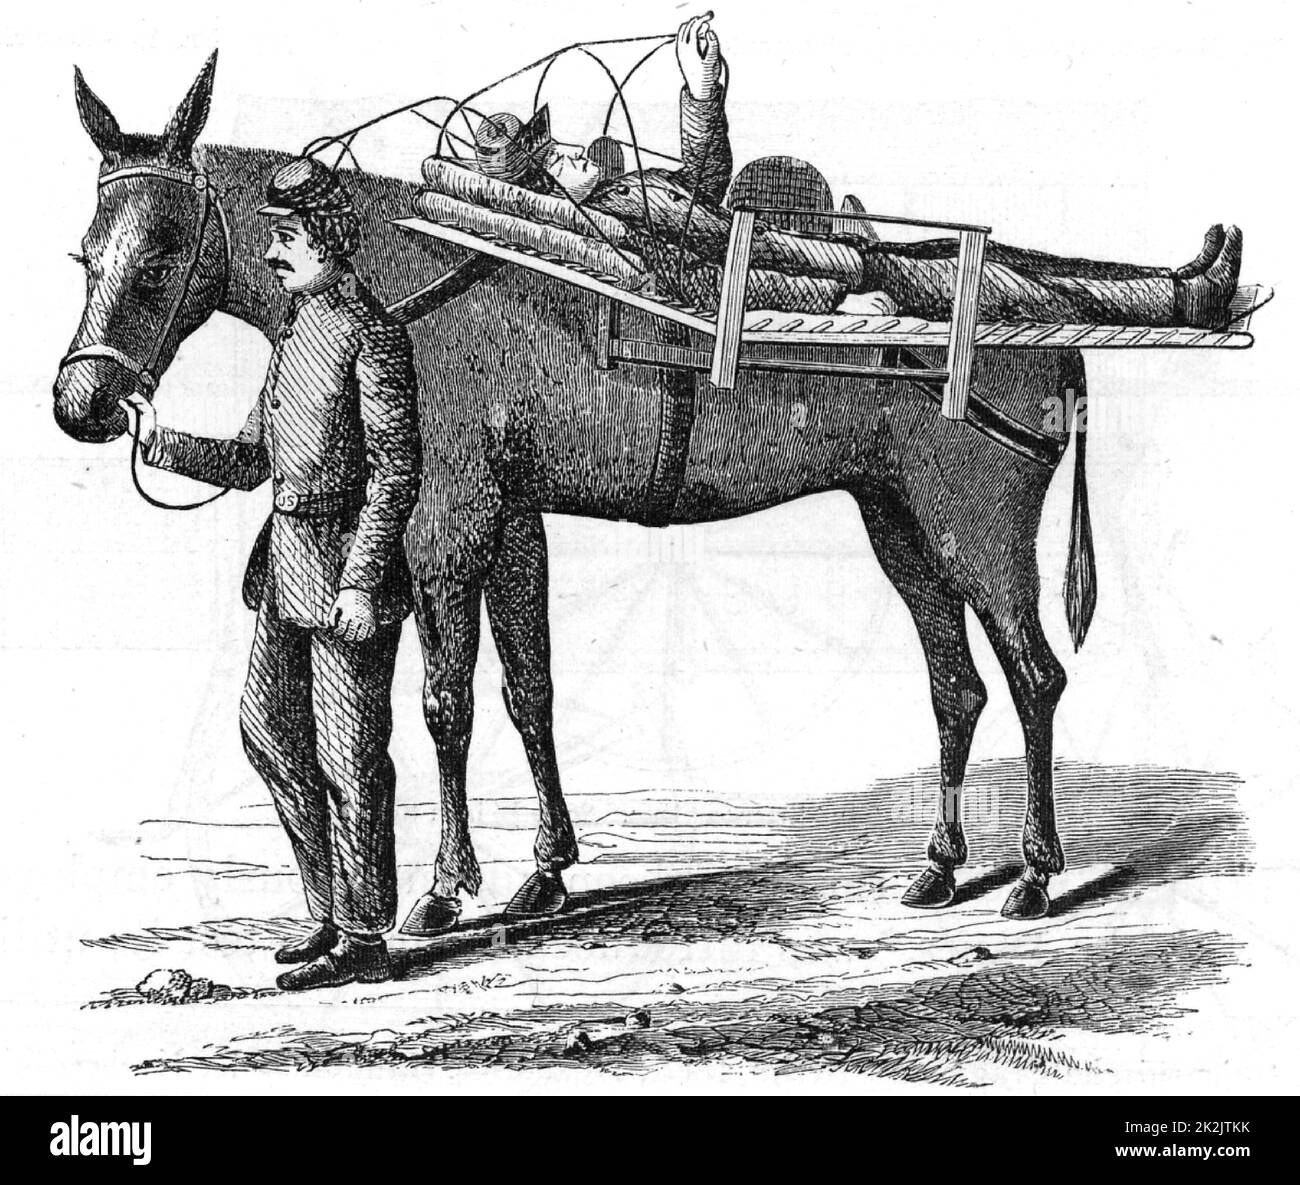 Amerikanischer Bürgerkrieg 1861-1865. Unfall mit Pferd Einstreu transportiert. Holzstich von 1865. Stockfoto